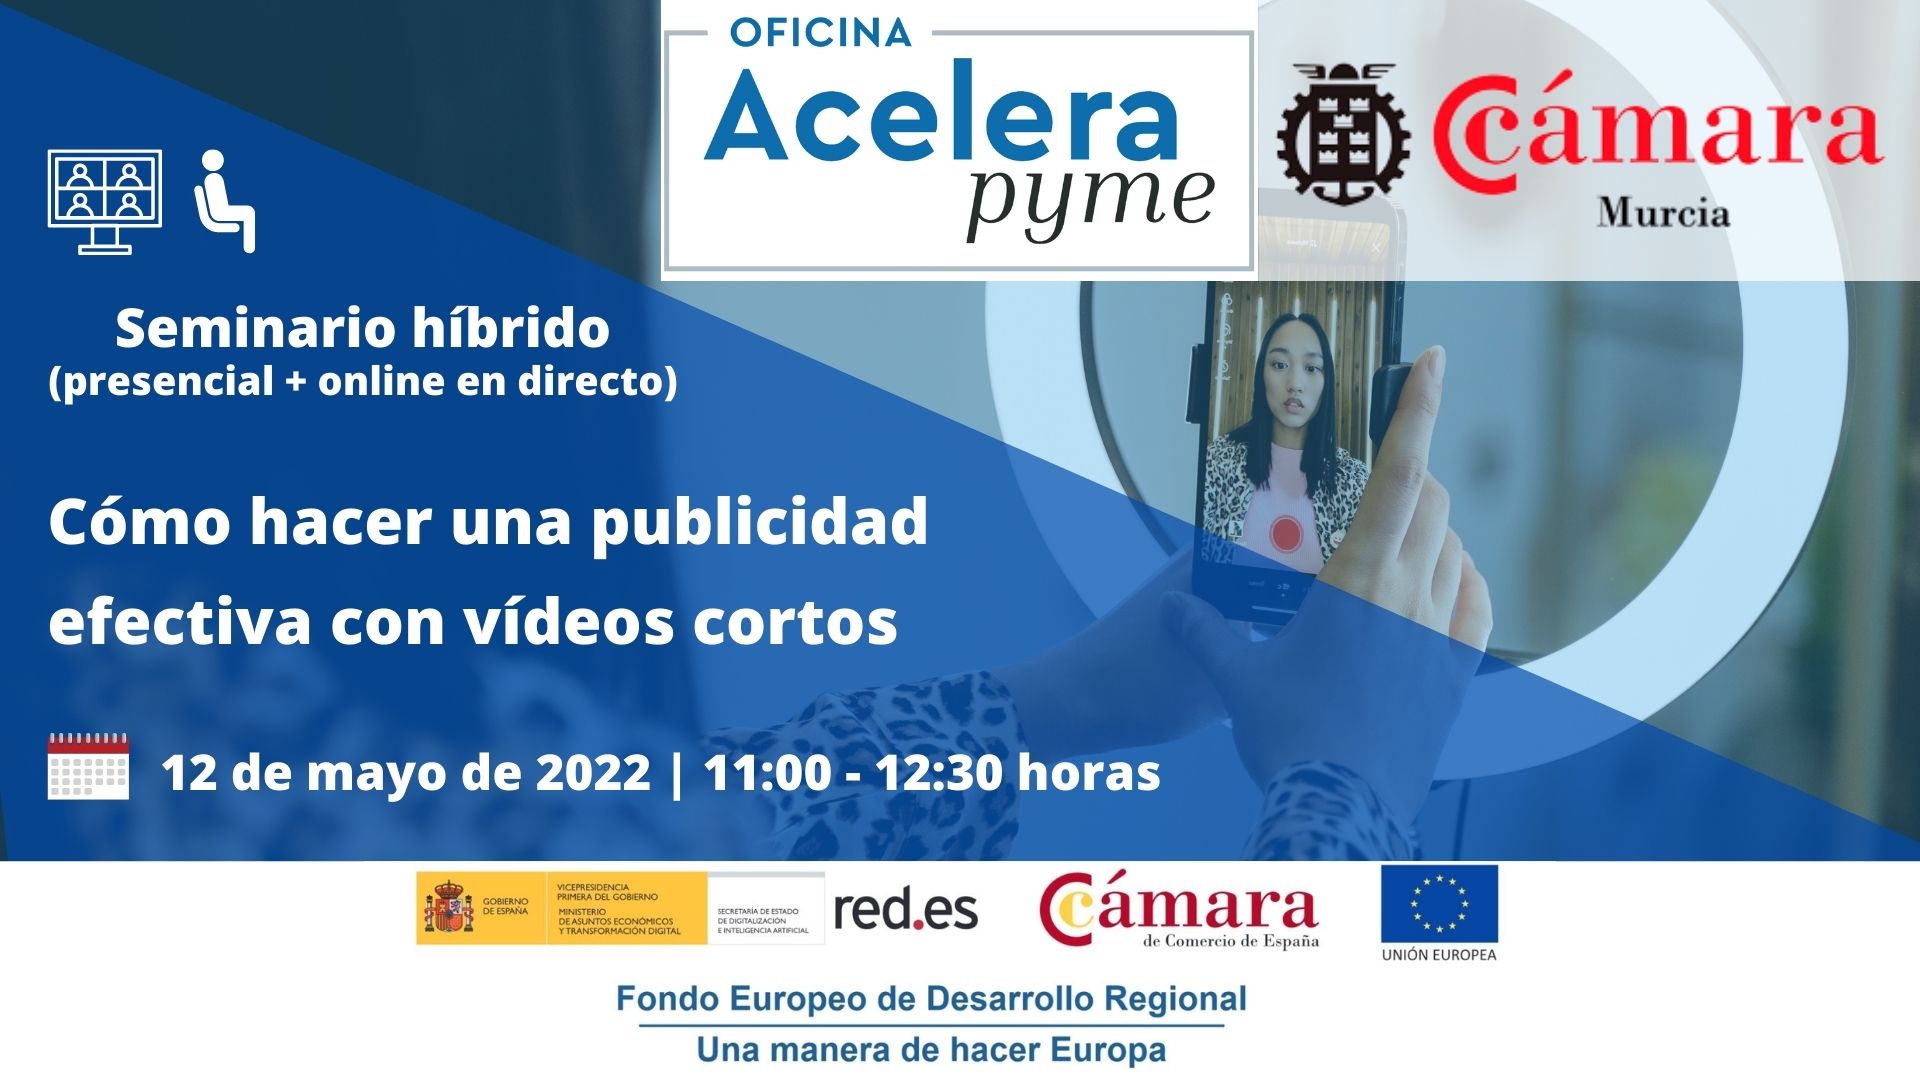 Seminario | Cómo hacer una publicidad efectiva con vídeos cortos | Oficina Acelera Pyme | Cámara de Comercio de Murcia